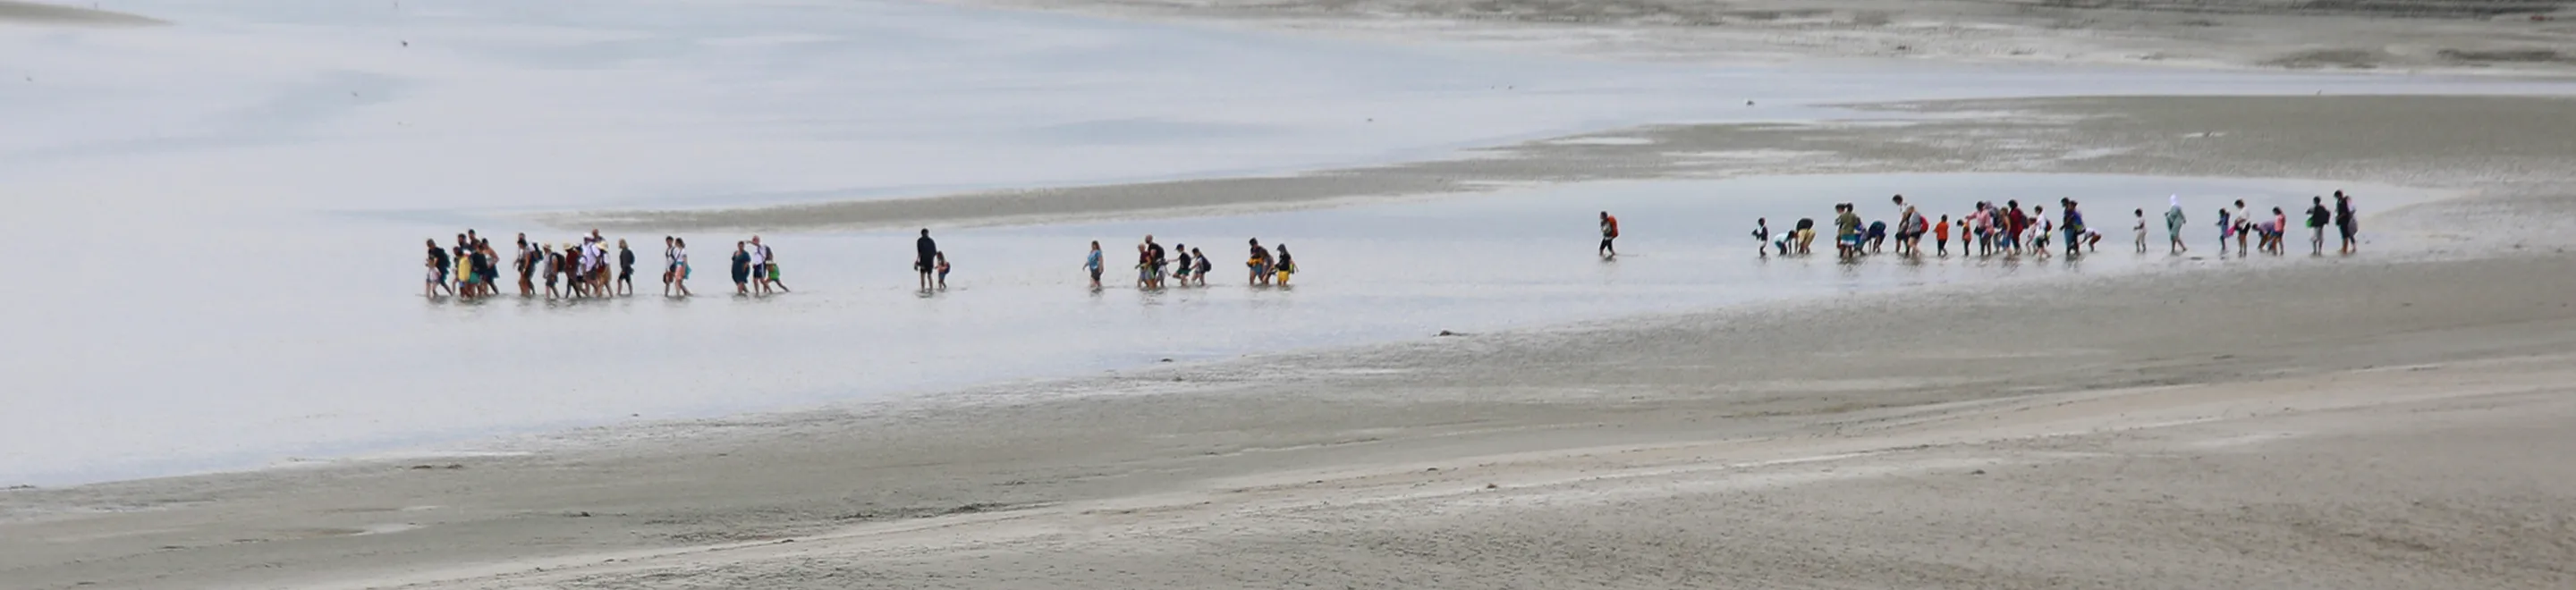 Eine Gruppe von Menschen, die in einer Entfernung durch ein Gewässer waten.